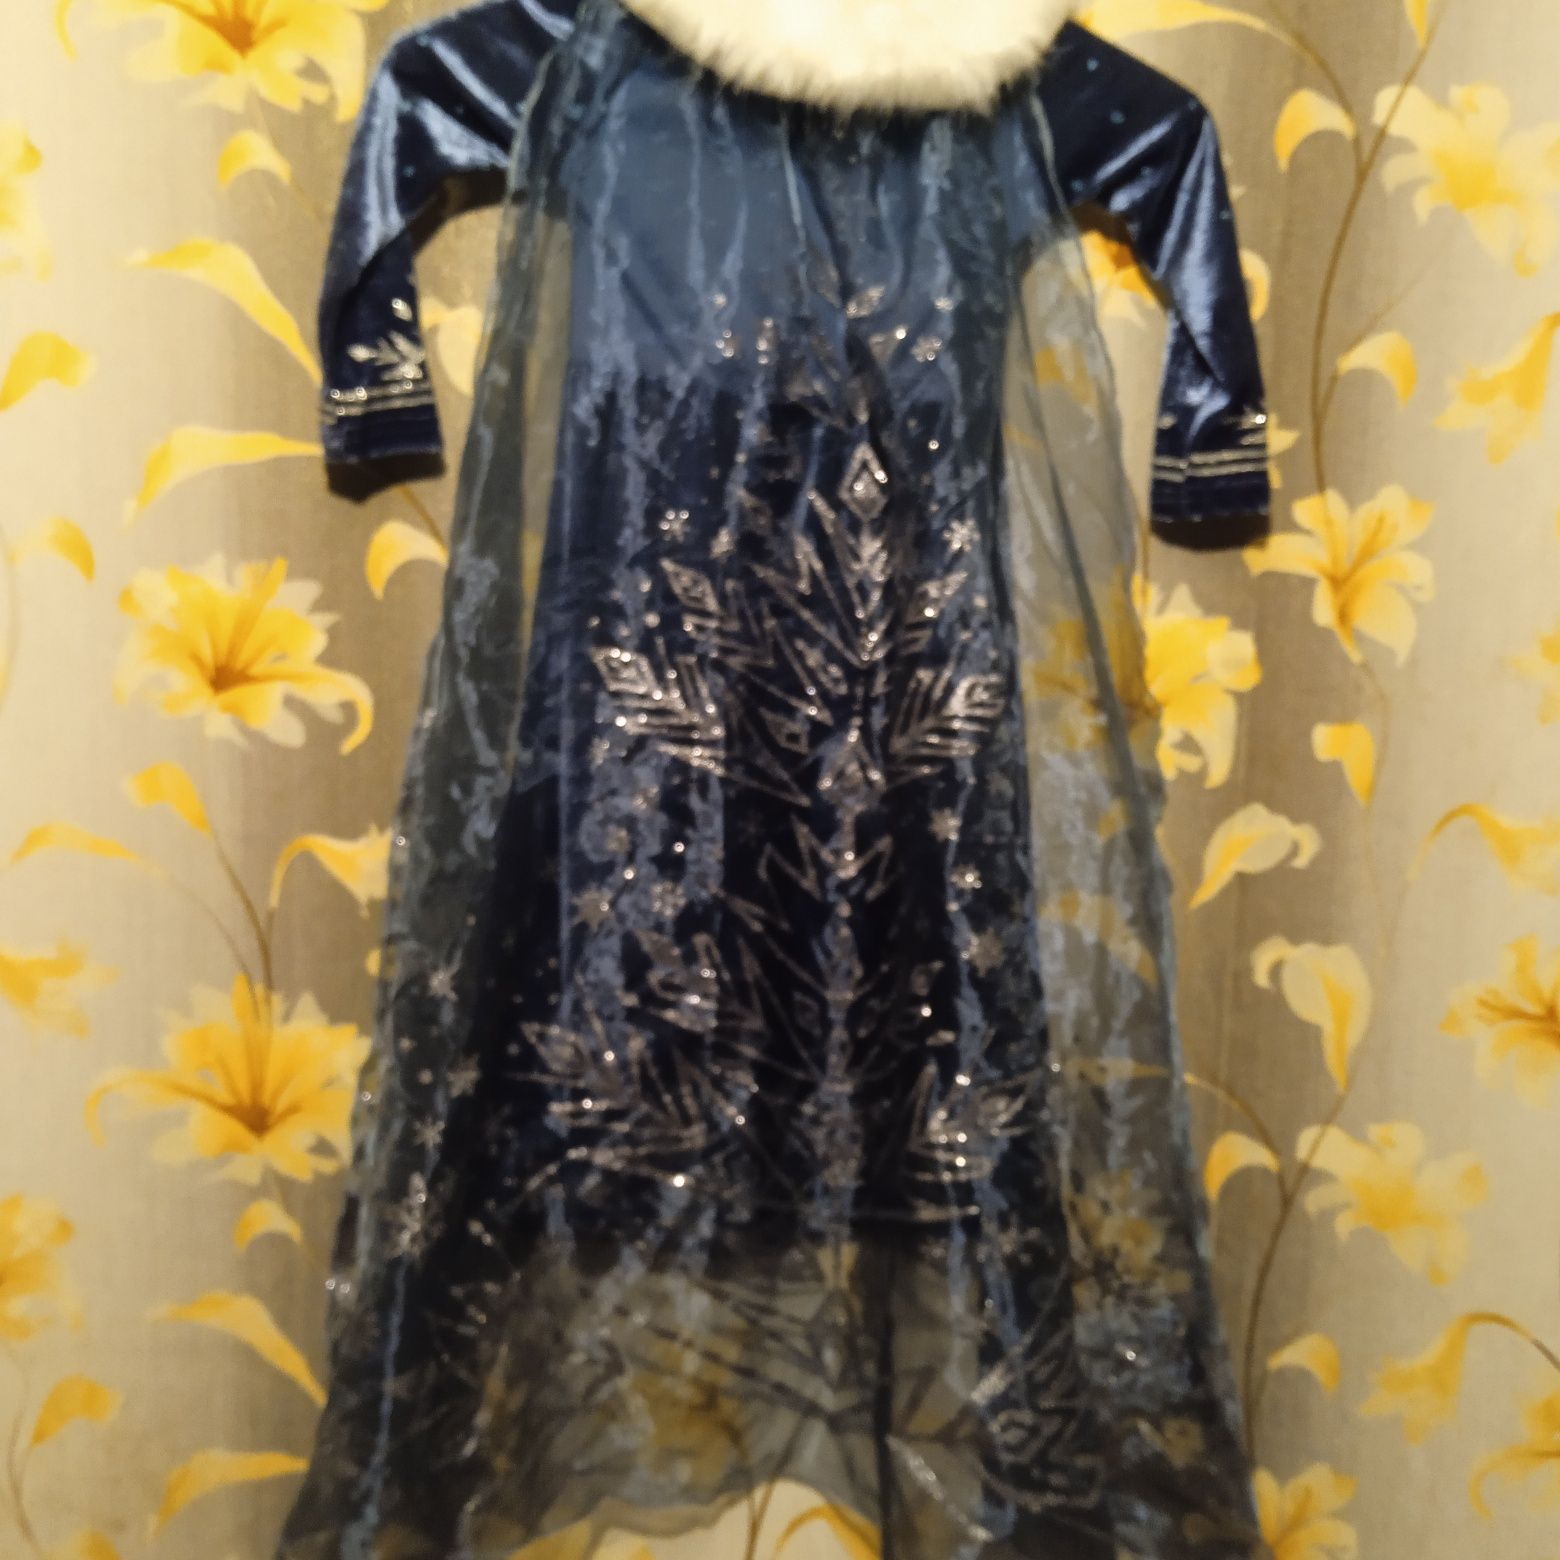 Платье Эльза "Холодное сердце" Frozen 5лет